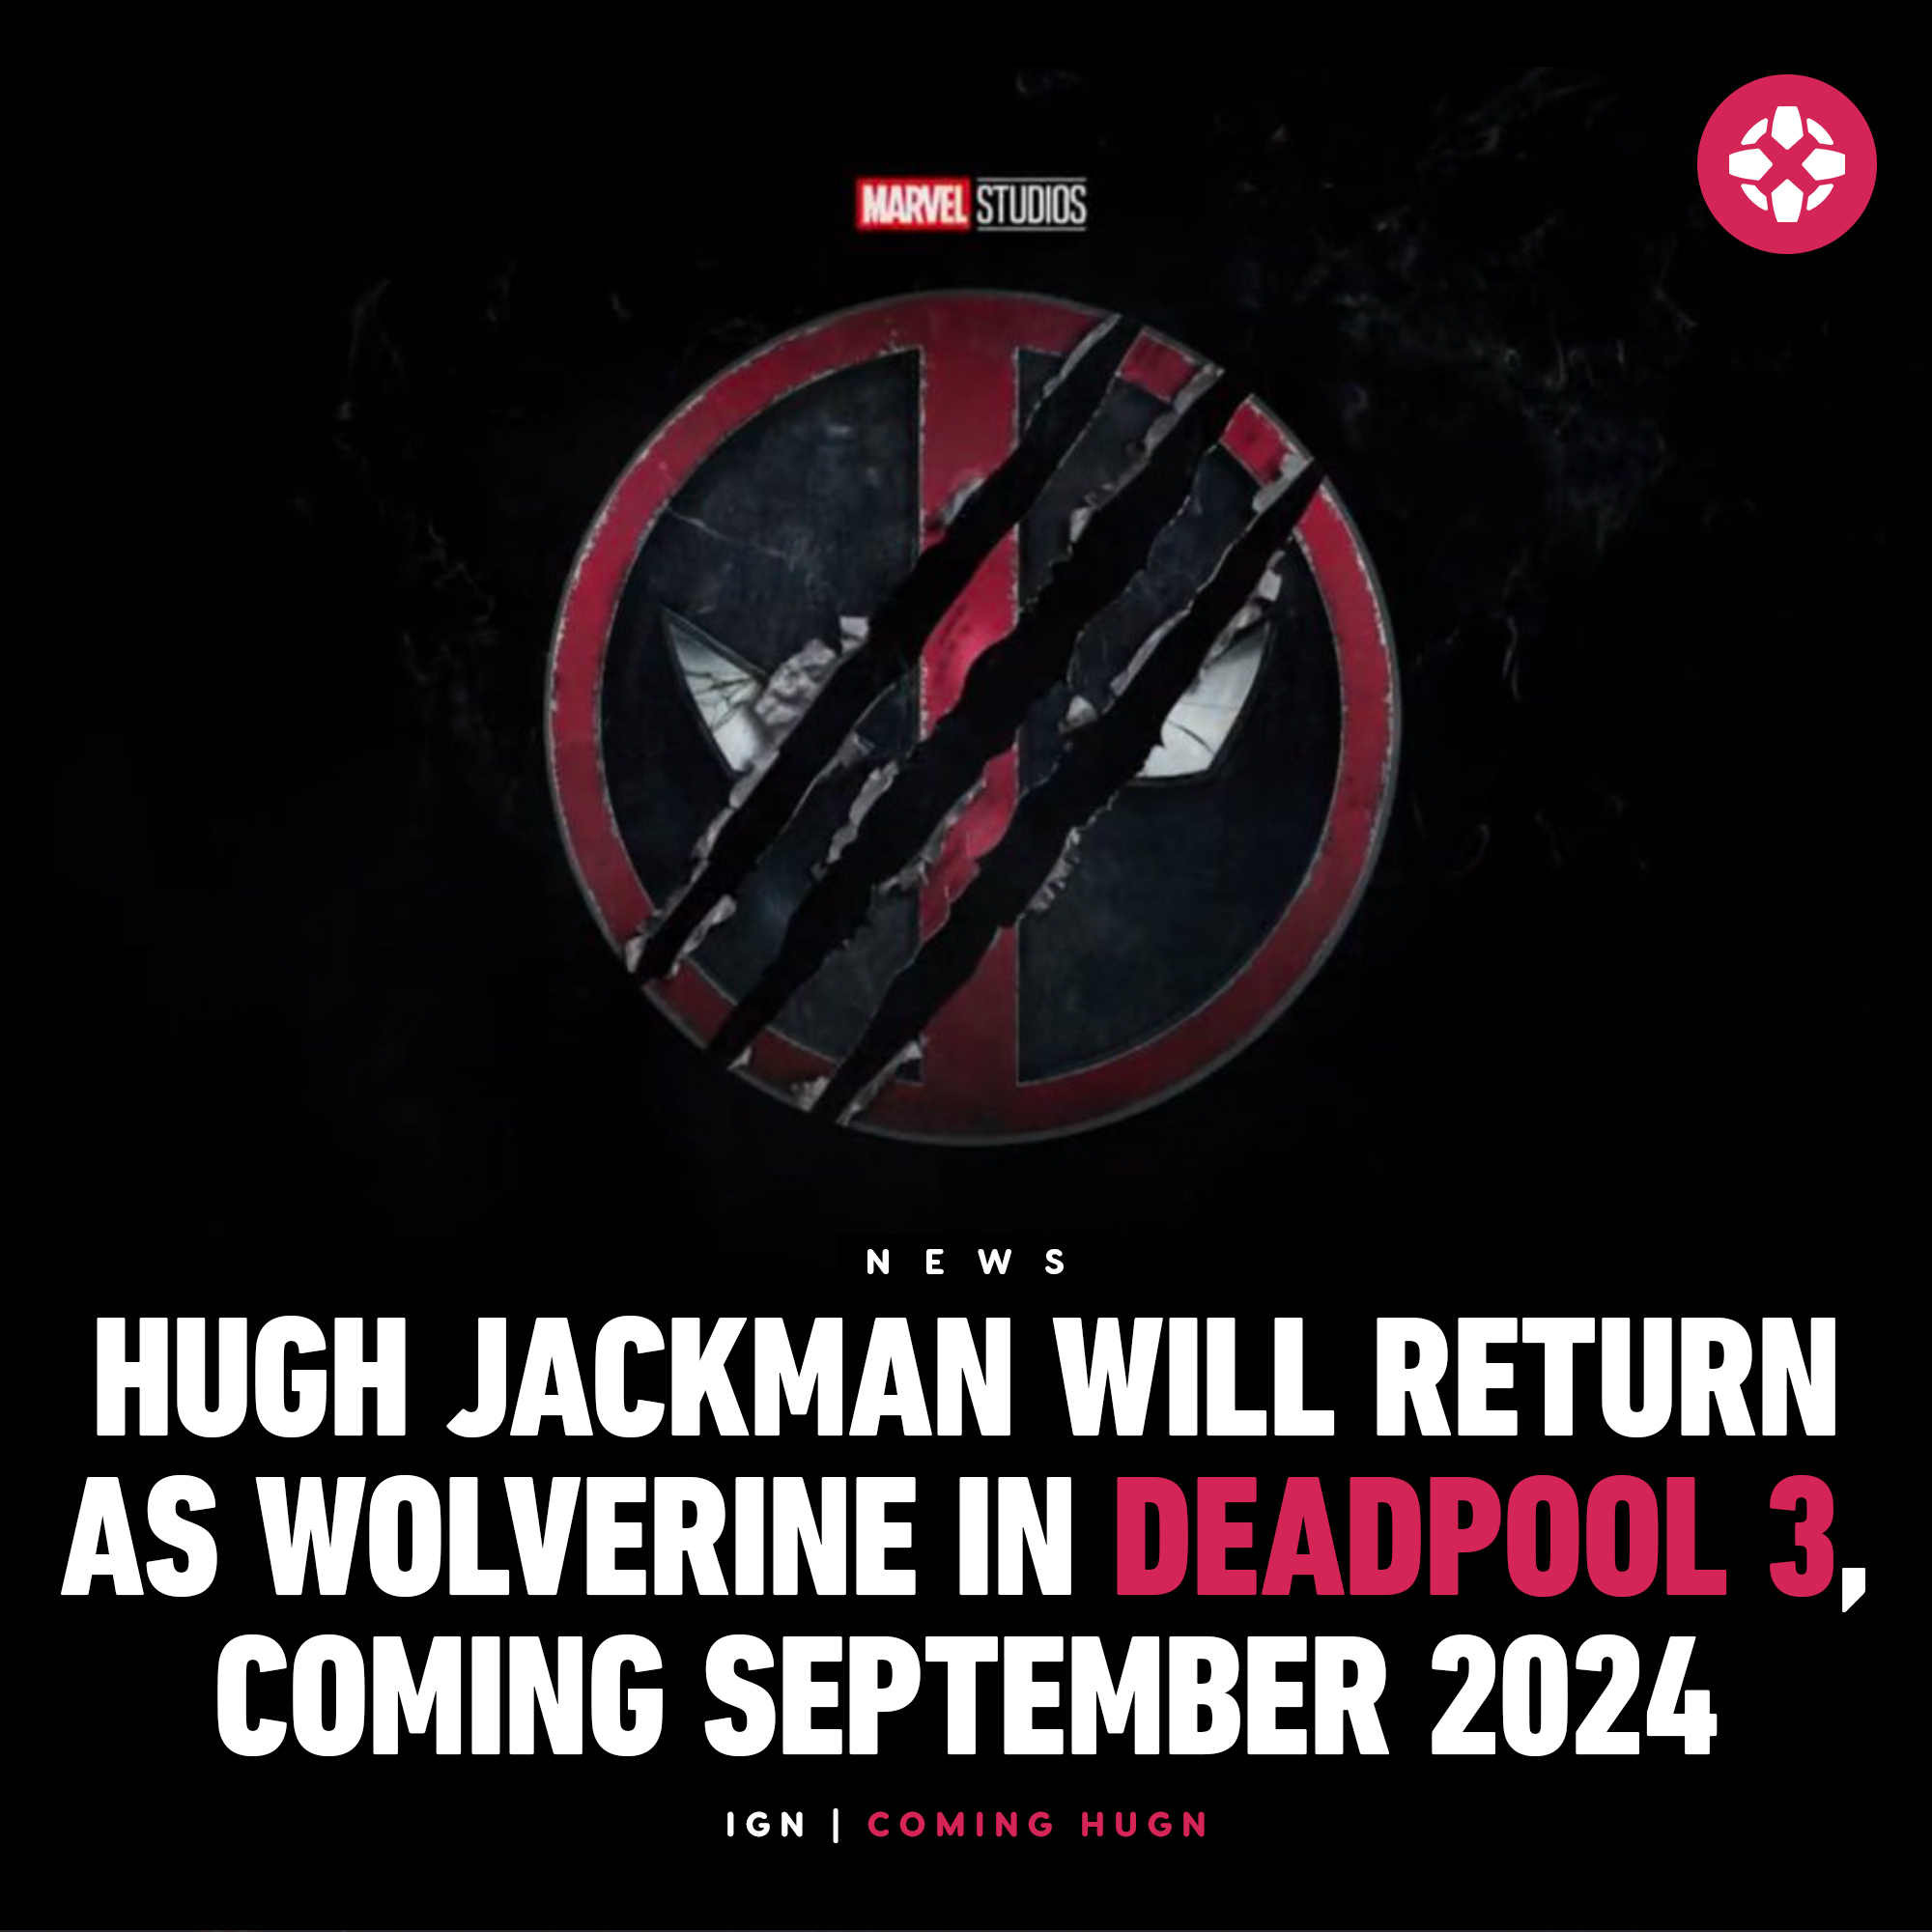 Deadpool 3 🔥 Hugh Jackman is coming backkkk 😍😍 Poster by:  @marvels.wolverine #deadpool #deadpooledit #deadpoolmovie #deadpoolart…